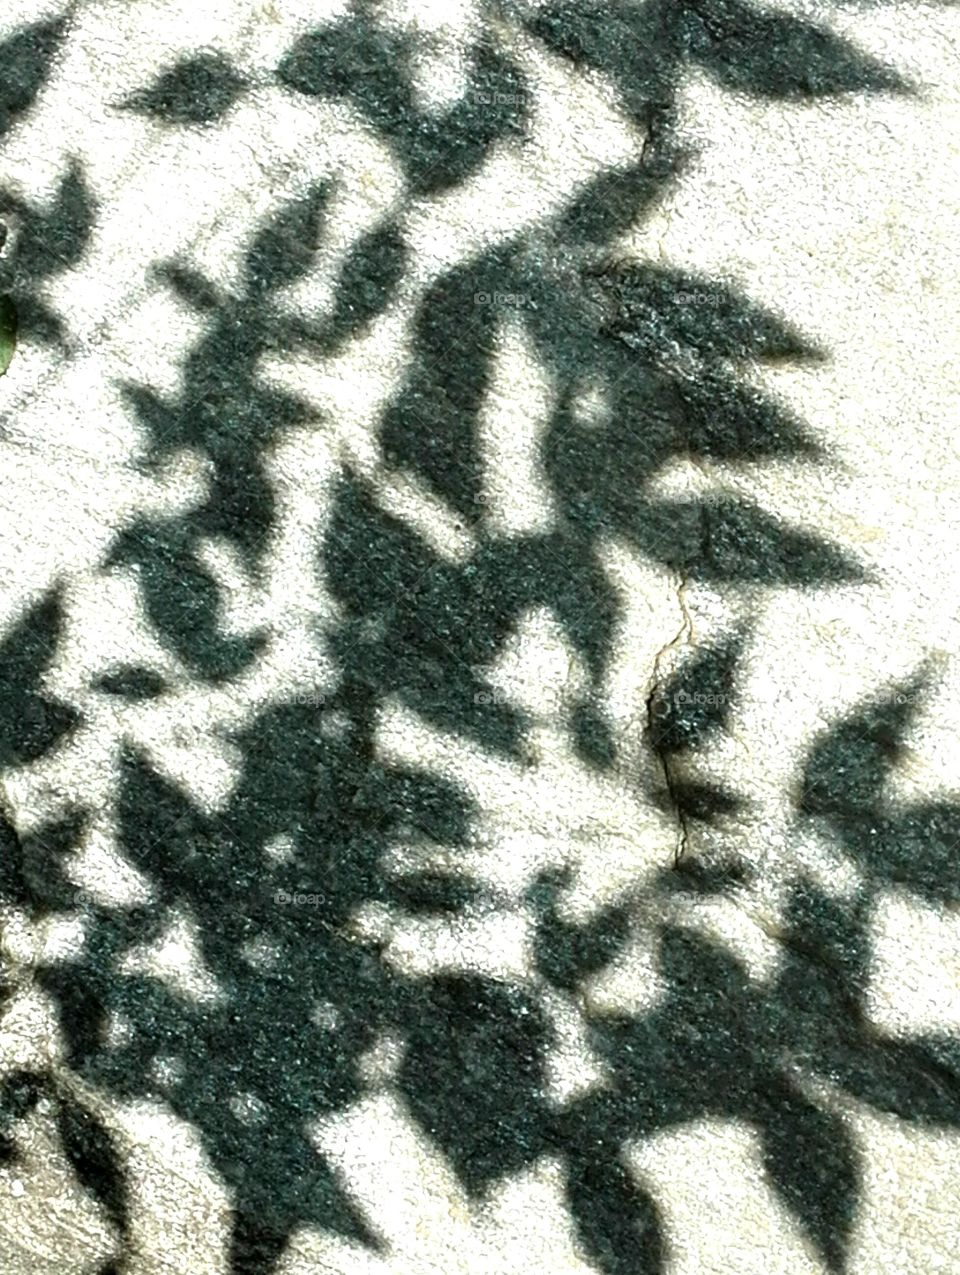 Shadows - dancing in the sun